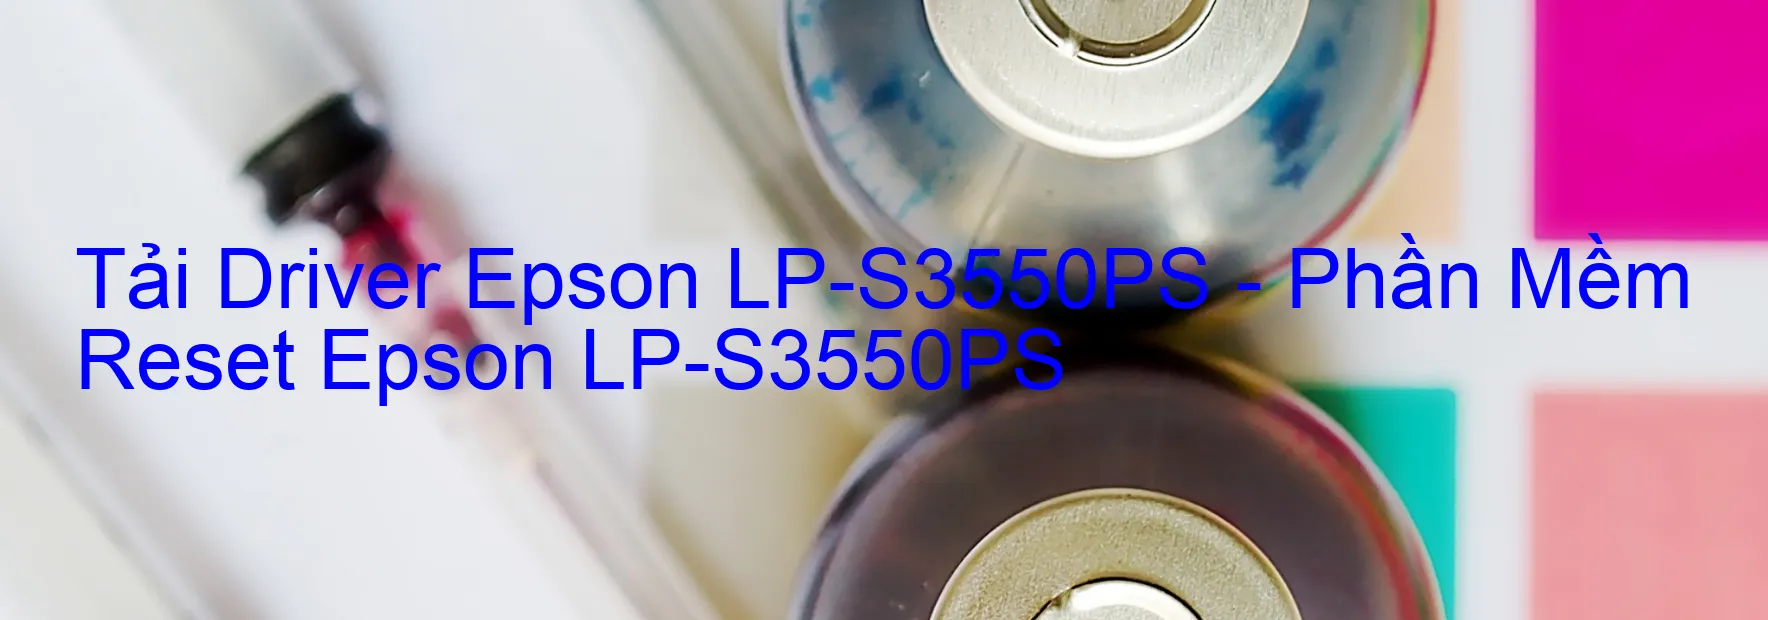 Driver Epson LP-S3550PS, Phần Mềm Reset Epson LP-S3550PS